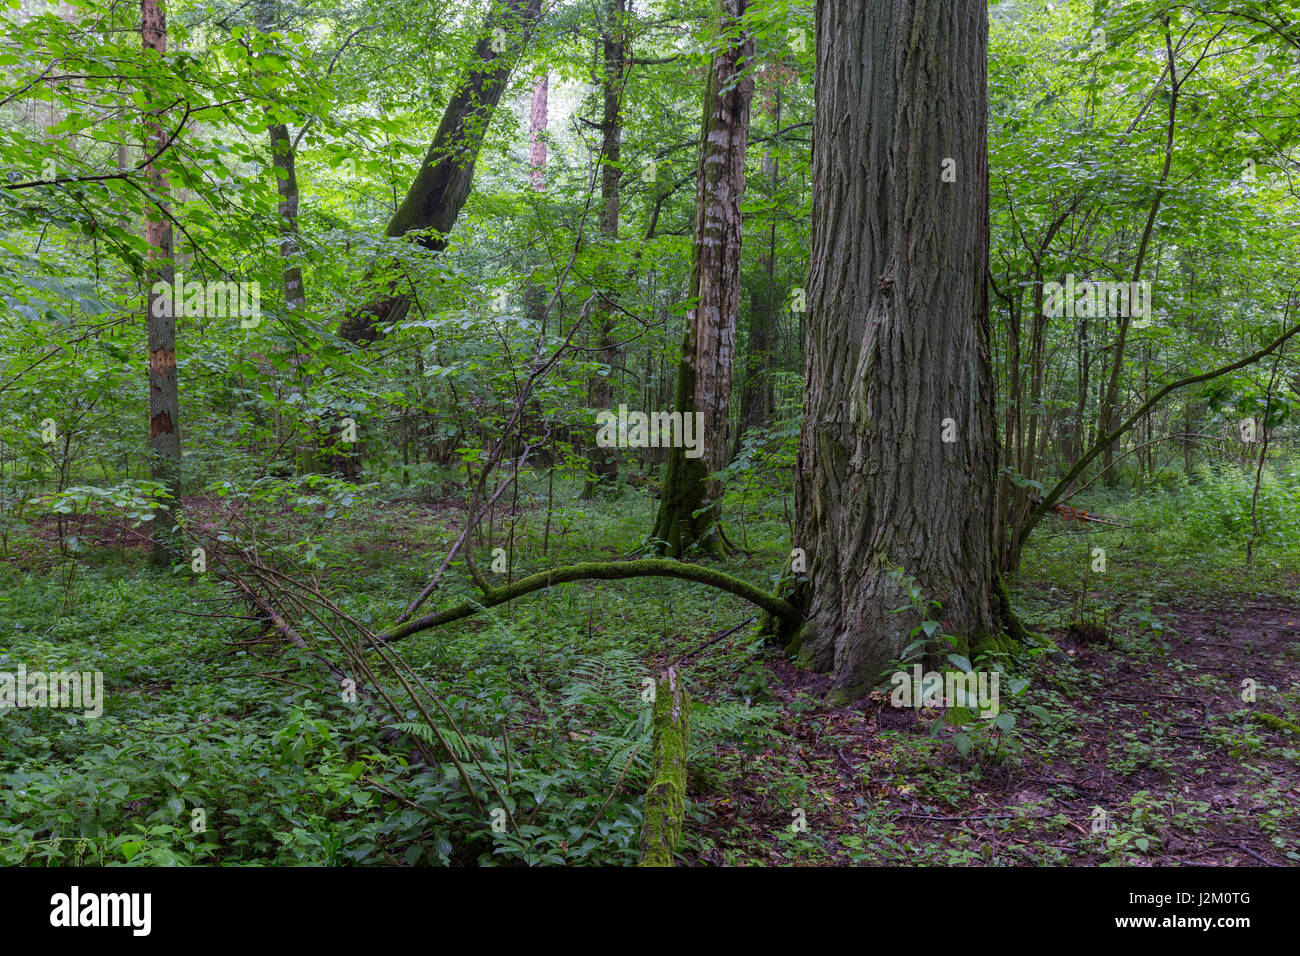 Decidui naturale stand della foresta di Bialowieza con il vecchio albero di quercia e carpino geografica, foresta di Bialowieza, Polonia, Europa Foto Stock